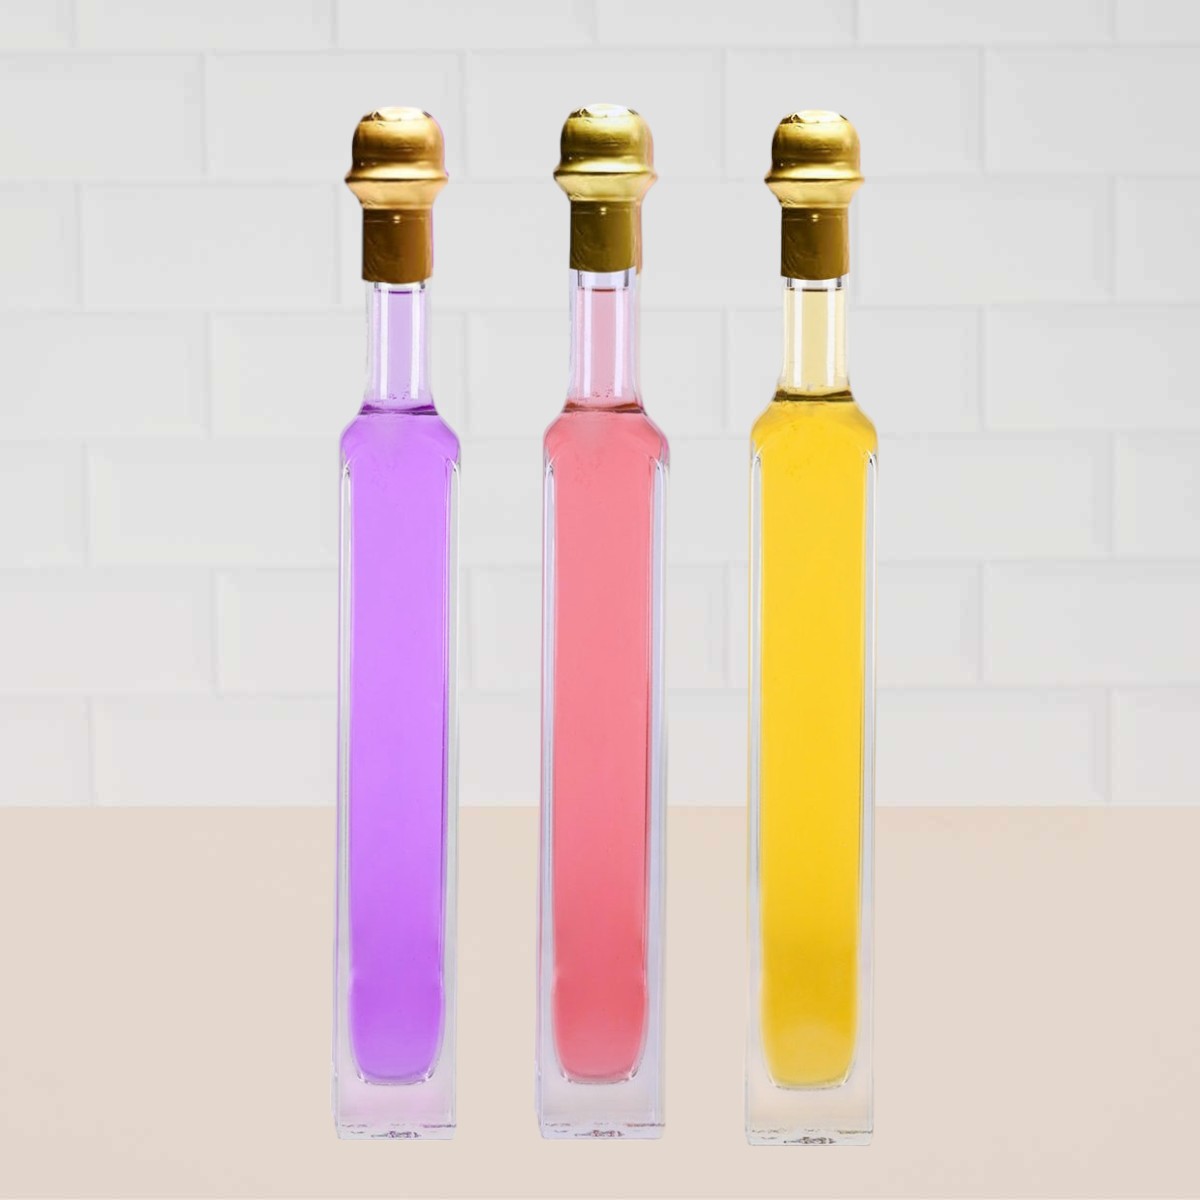 New Liqueur Trio Sampler Set 200ml Bottles